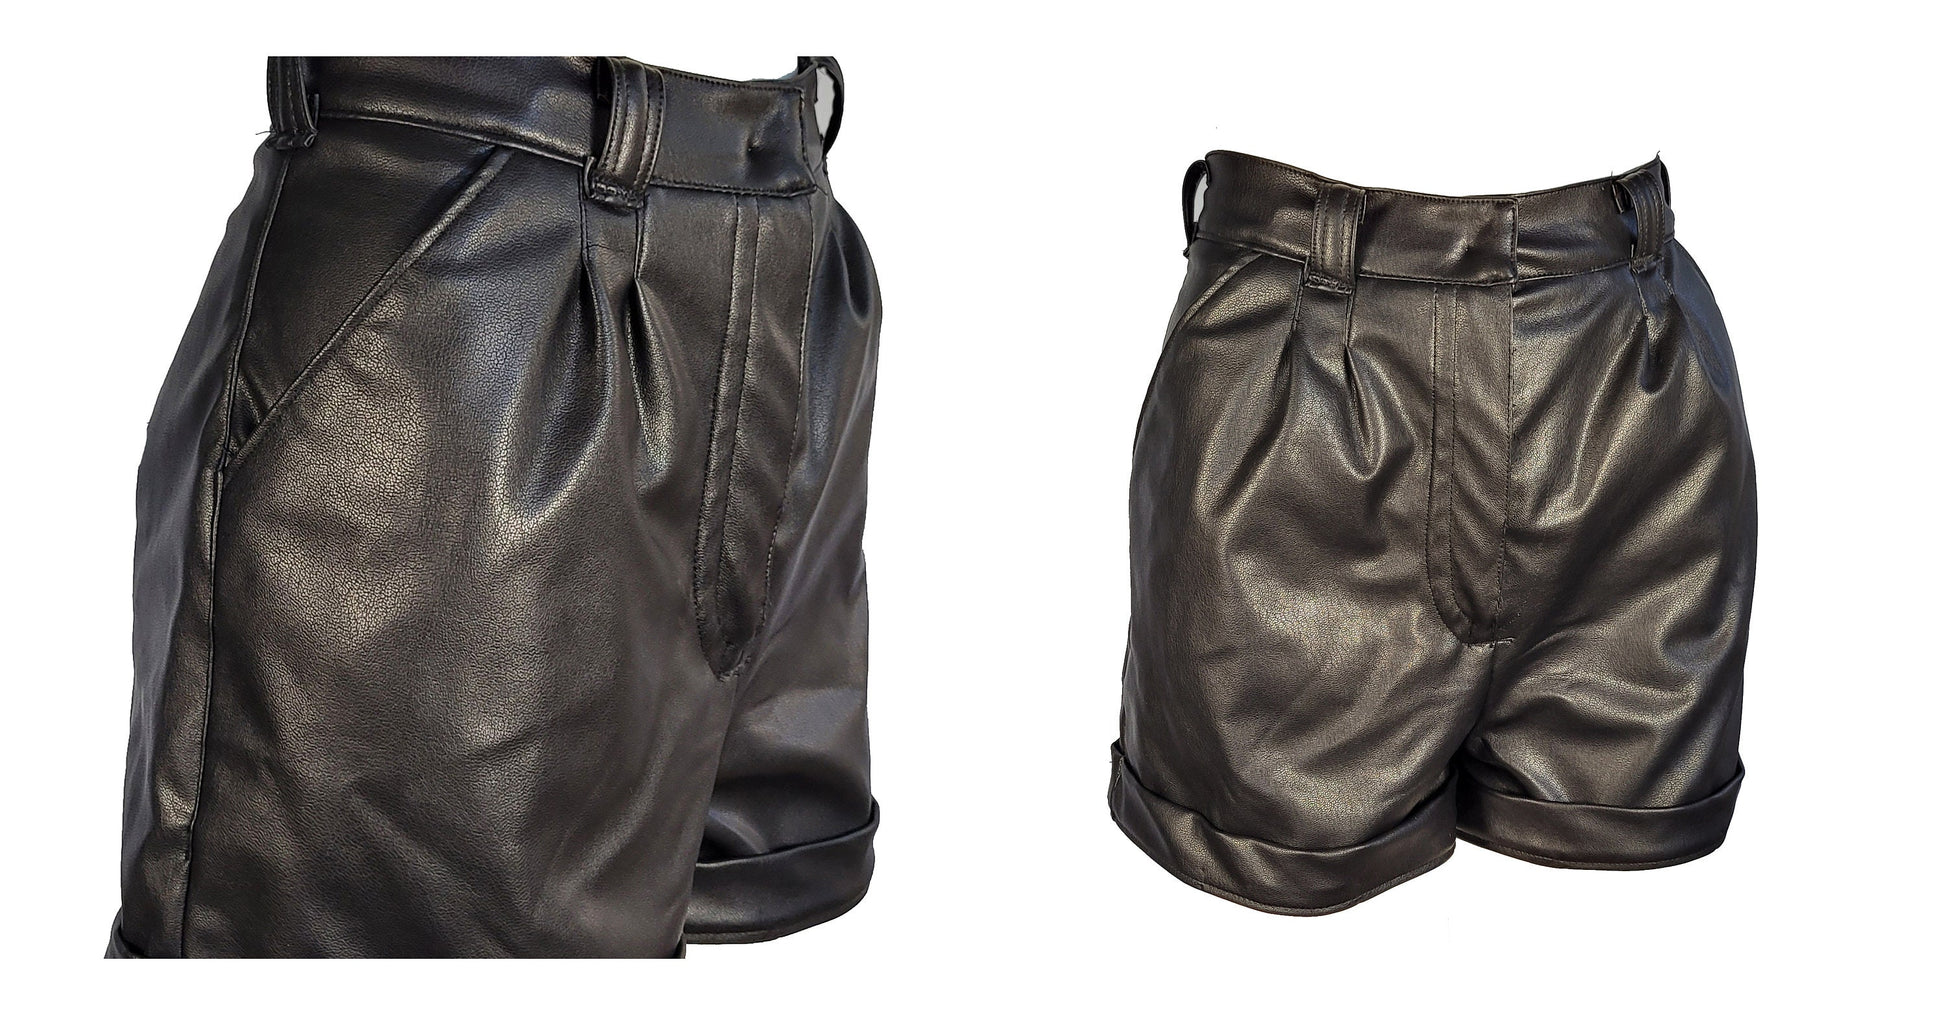 black leather shorts pleated shorts high rise shorts | pastel goth shorts vegan leather pants | pastel goth clothing aesthetic clothing